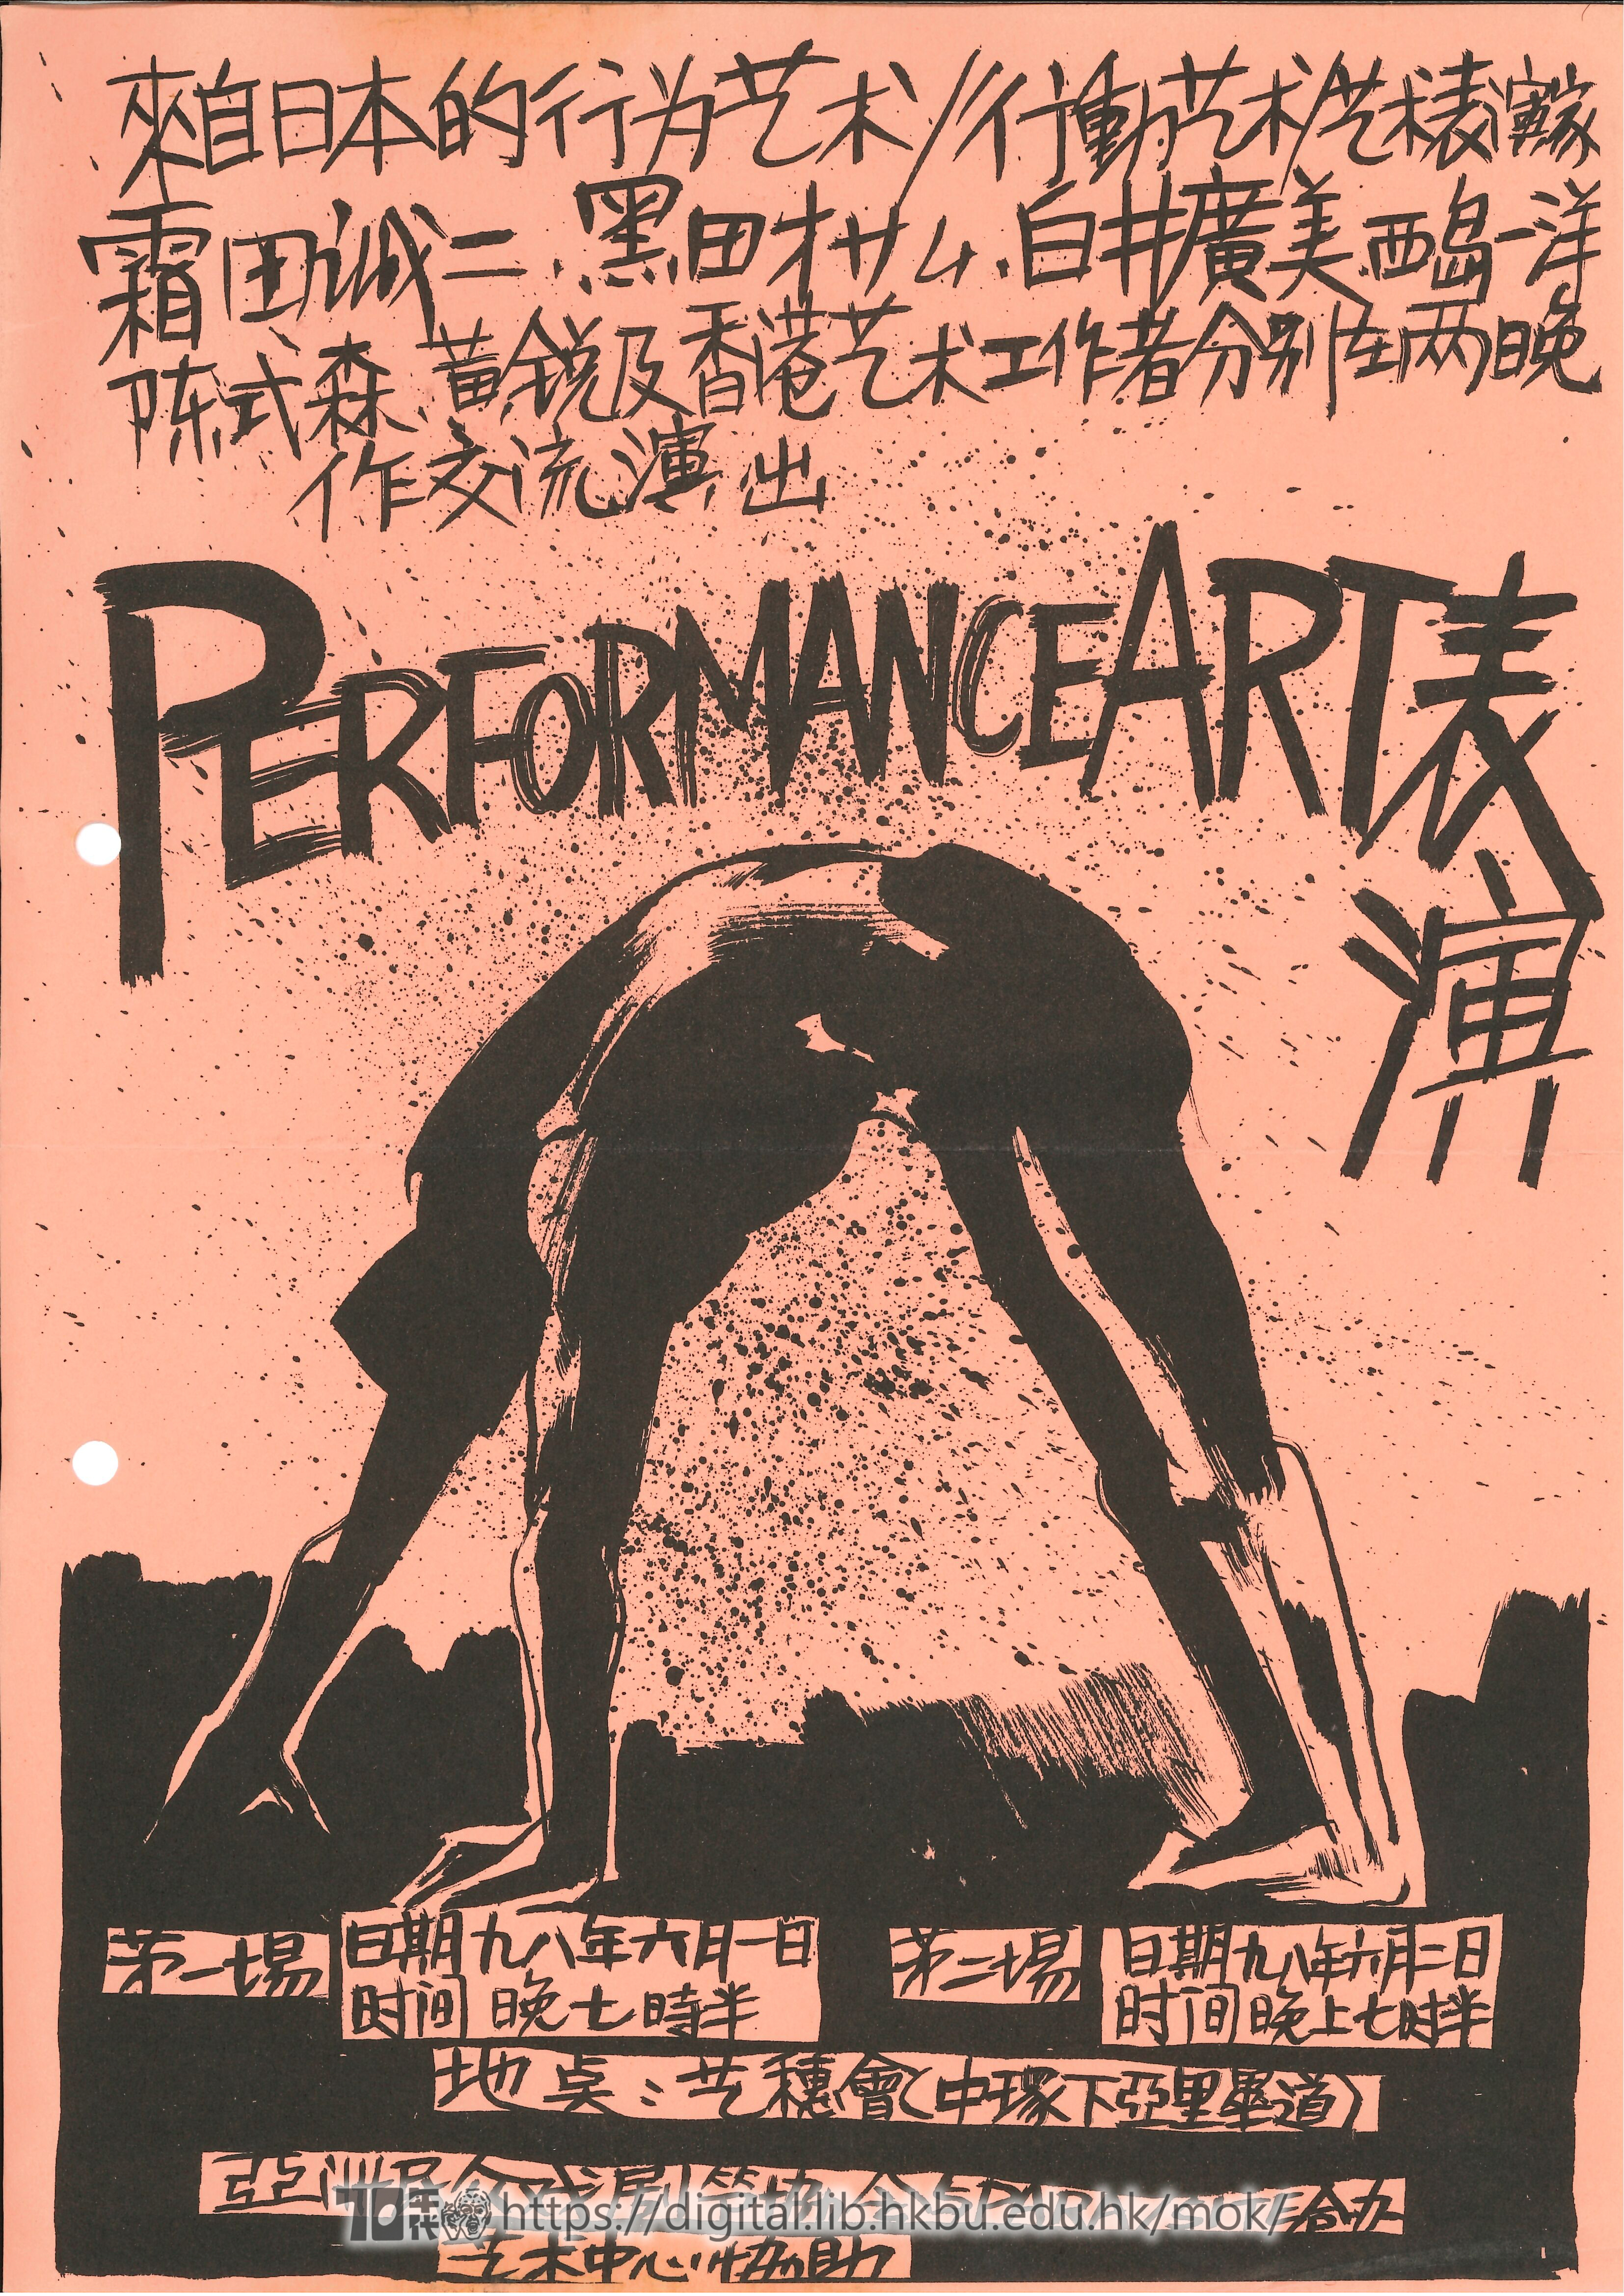 行為藝術  日本/中國行爲藝術重量級匯演與交流 海報  